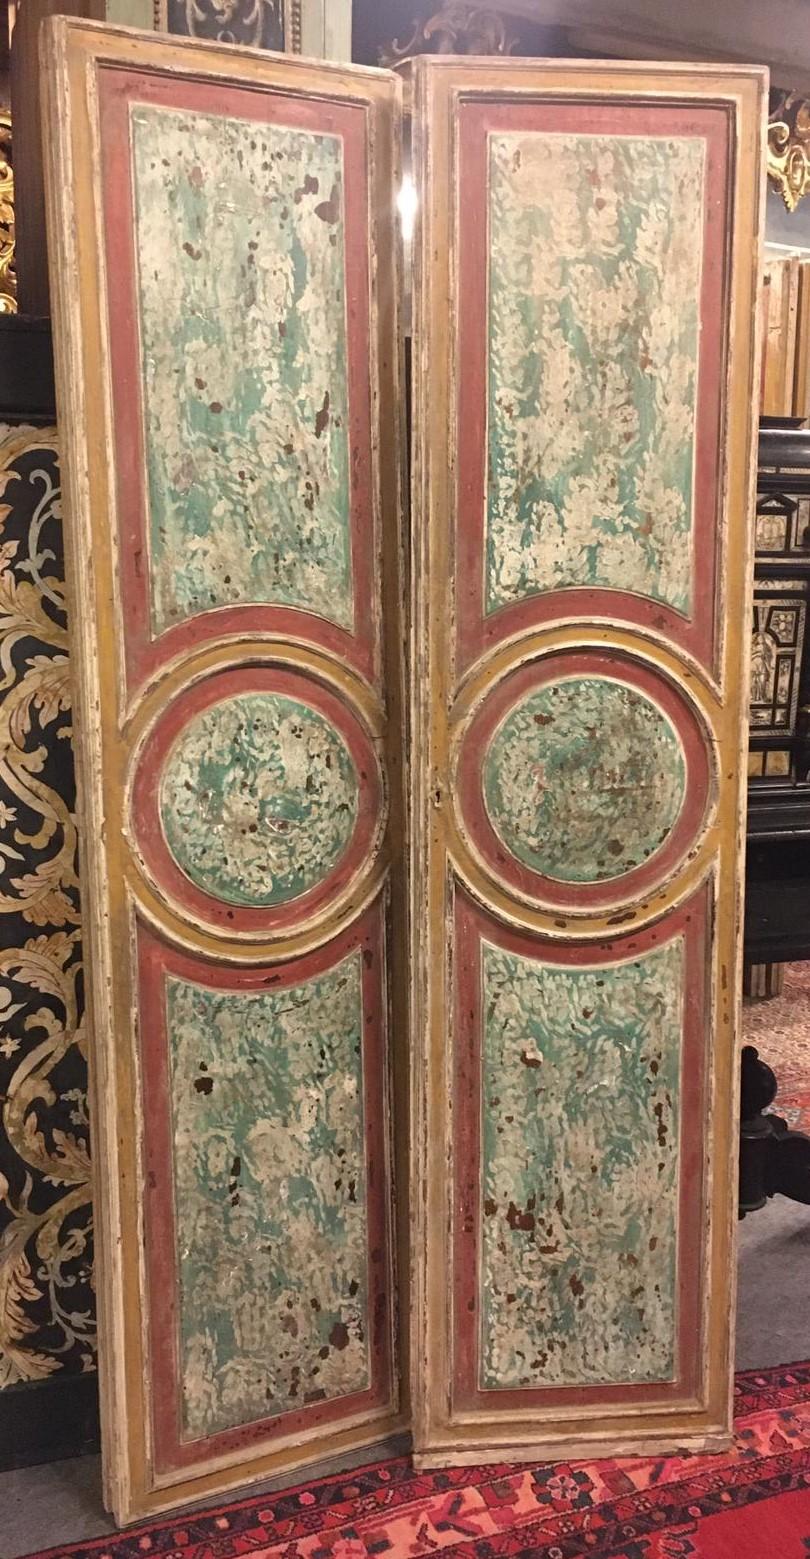 Satz von N. 2 doppelflügeligen Türen lackiert mit einem faux Marmor-Effekt, farbig und geschnitzt, doppelseitig, geschnitzt und lackiert auch auf der Rückseite, handgefertigt im 18. Jahrhundert, aus Rom, Messung cm B 100 x H 210.
Auch sehr schön und